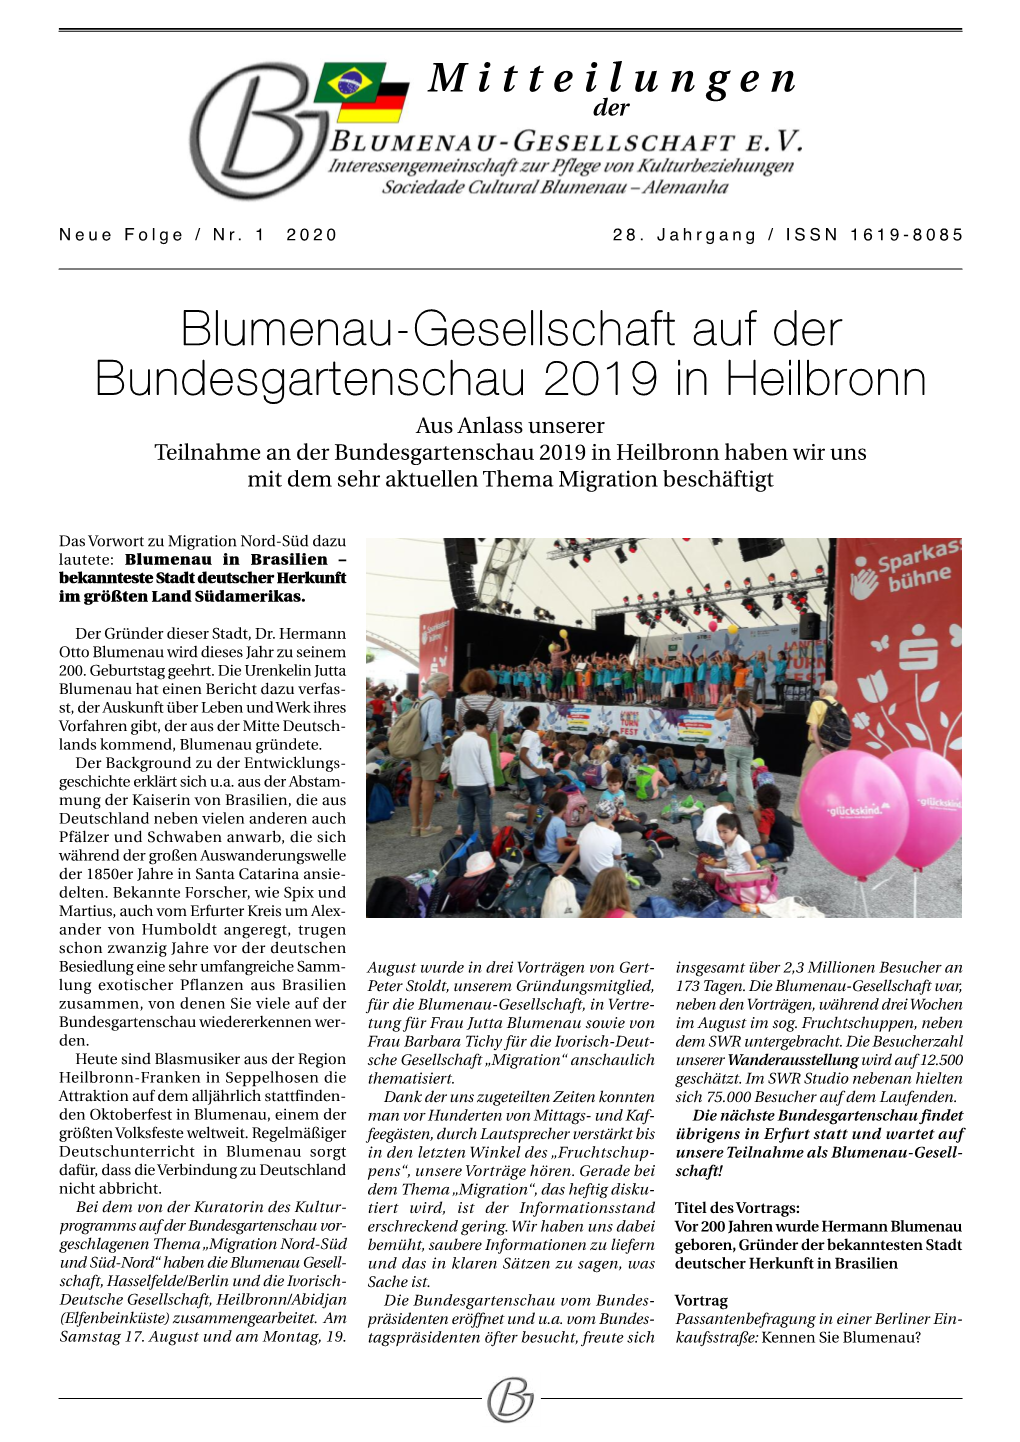 Blumenau-Gesellschaft Auf Der Bundesgartenschau 2019 In